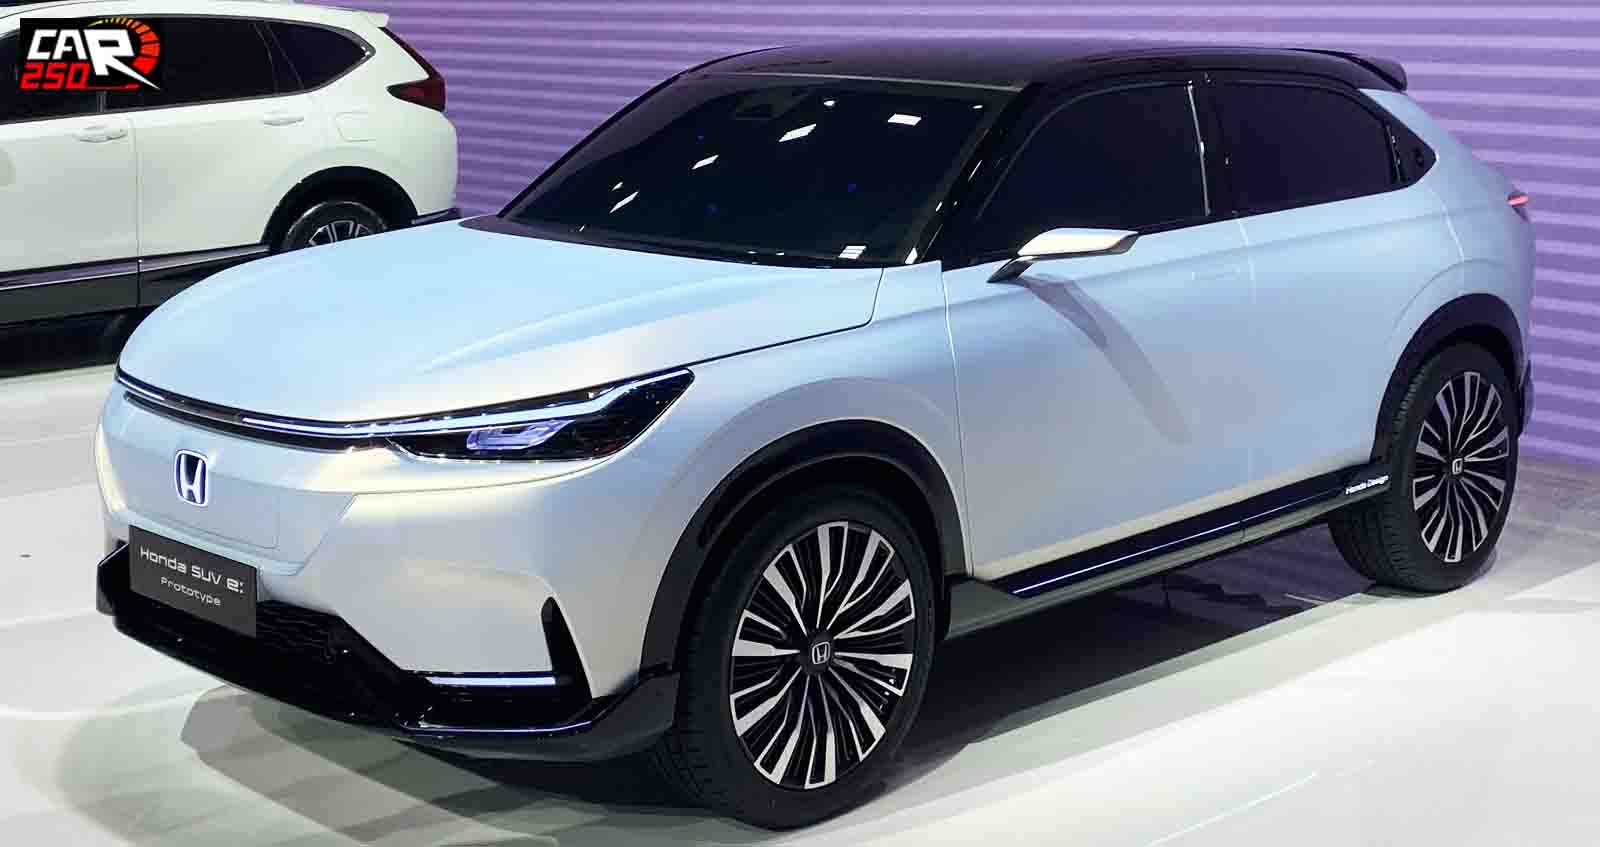 ภาพคันจริง Honda SUV e : Prototype รถยนต์ไฟฟ้าต้นแบบ ในงาน เซี่ยงไฮ้ มอเตอร์โชว์ 2021